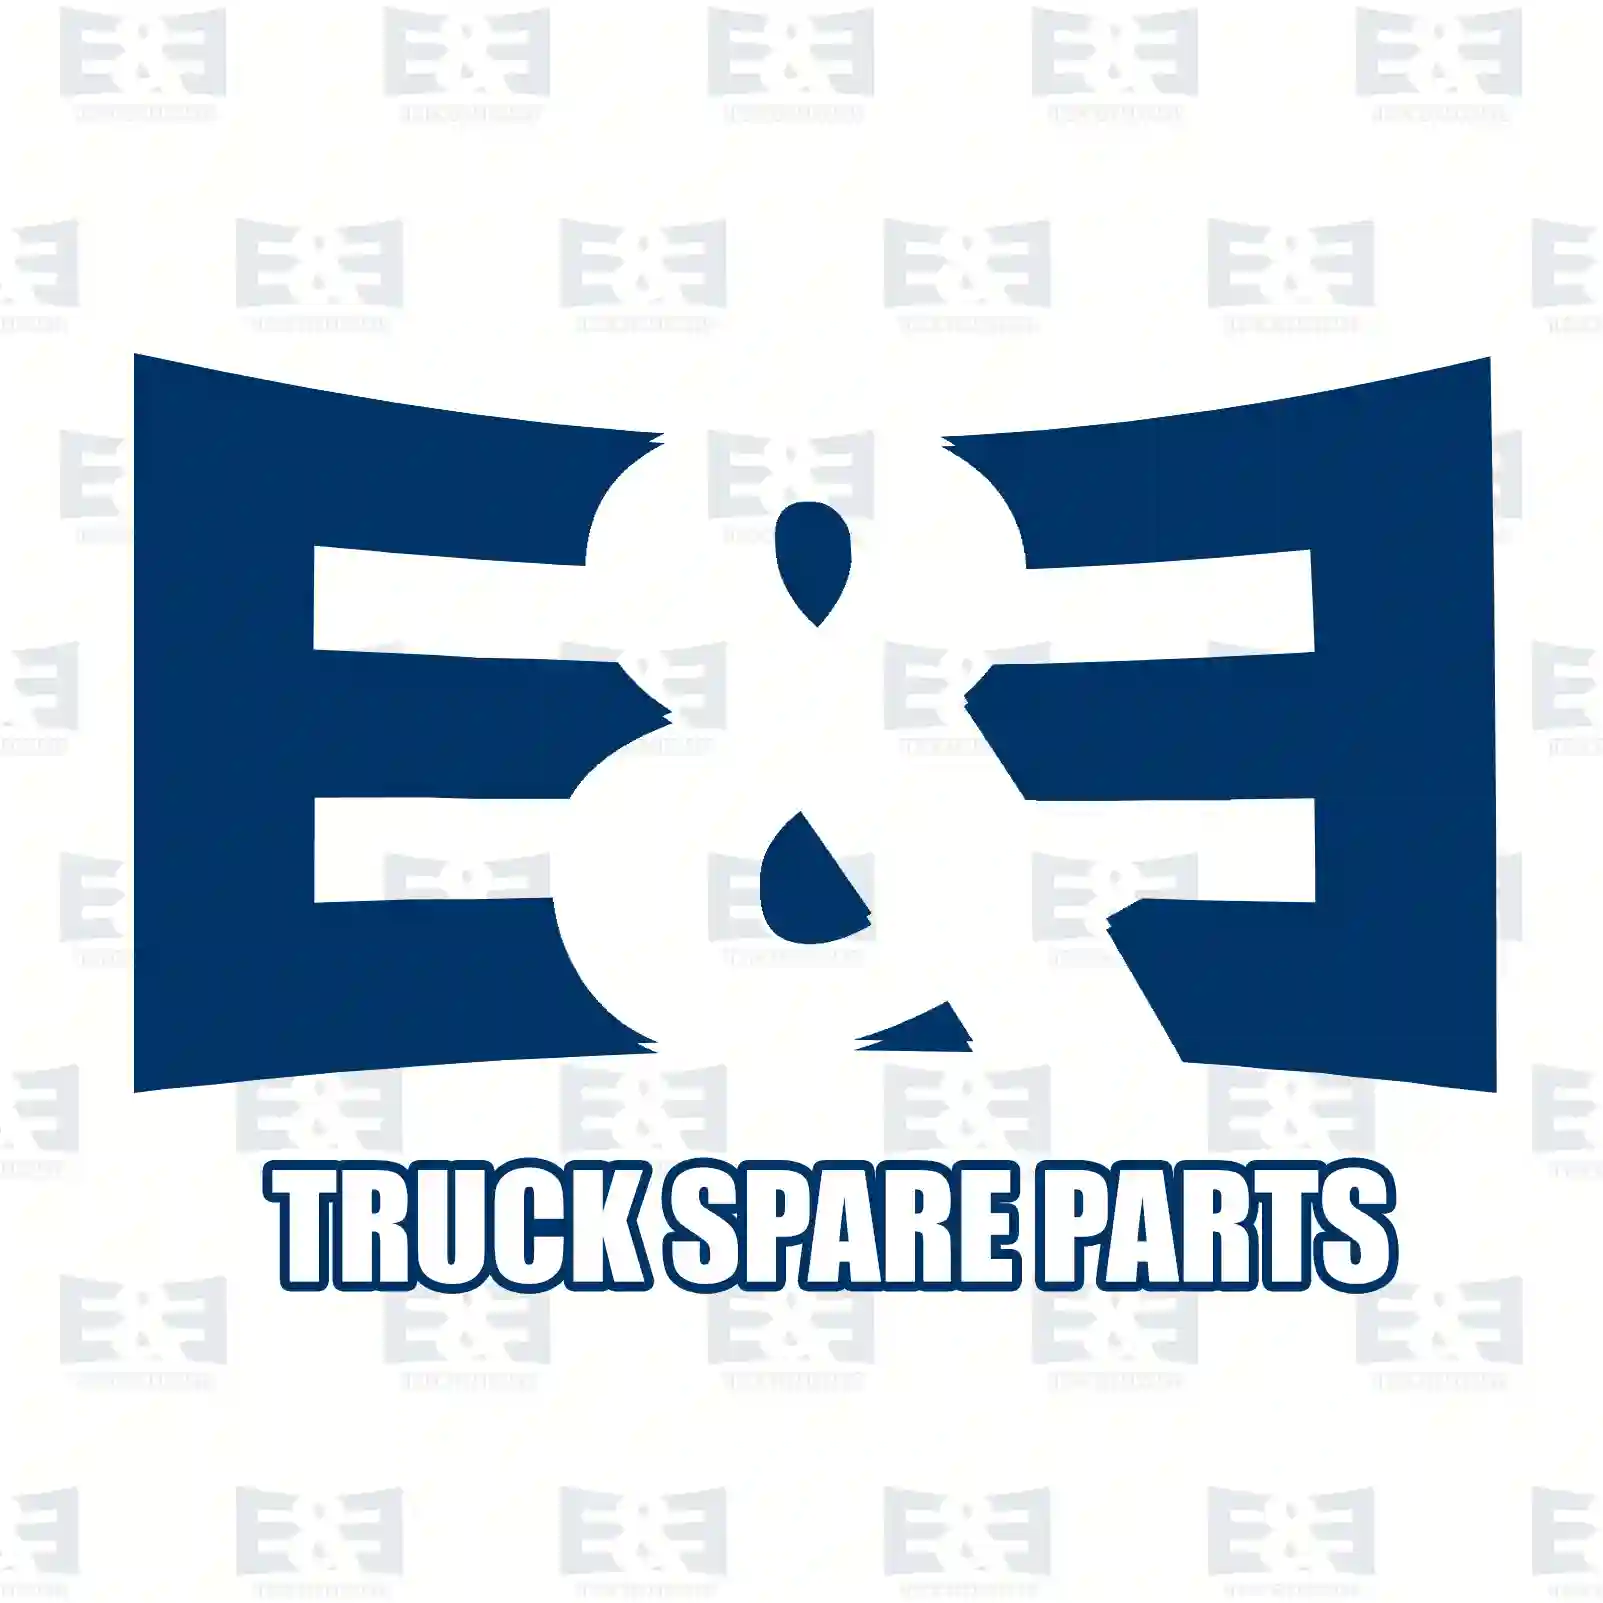 Gear, 2nd gear, 2E2276007, 1109588 ||  2E2276007 E&E Truck Spare Parts | Truck Spare Parts, Auotomotive Spare Parts Gear, 2nd gear, 2E2276007, 1109588 ||  2E2276007 E&E Truck Spare Parts | Truck Spare Parts, Auotomotive Spare Parts